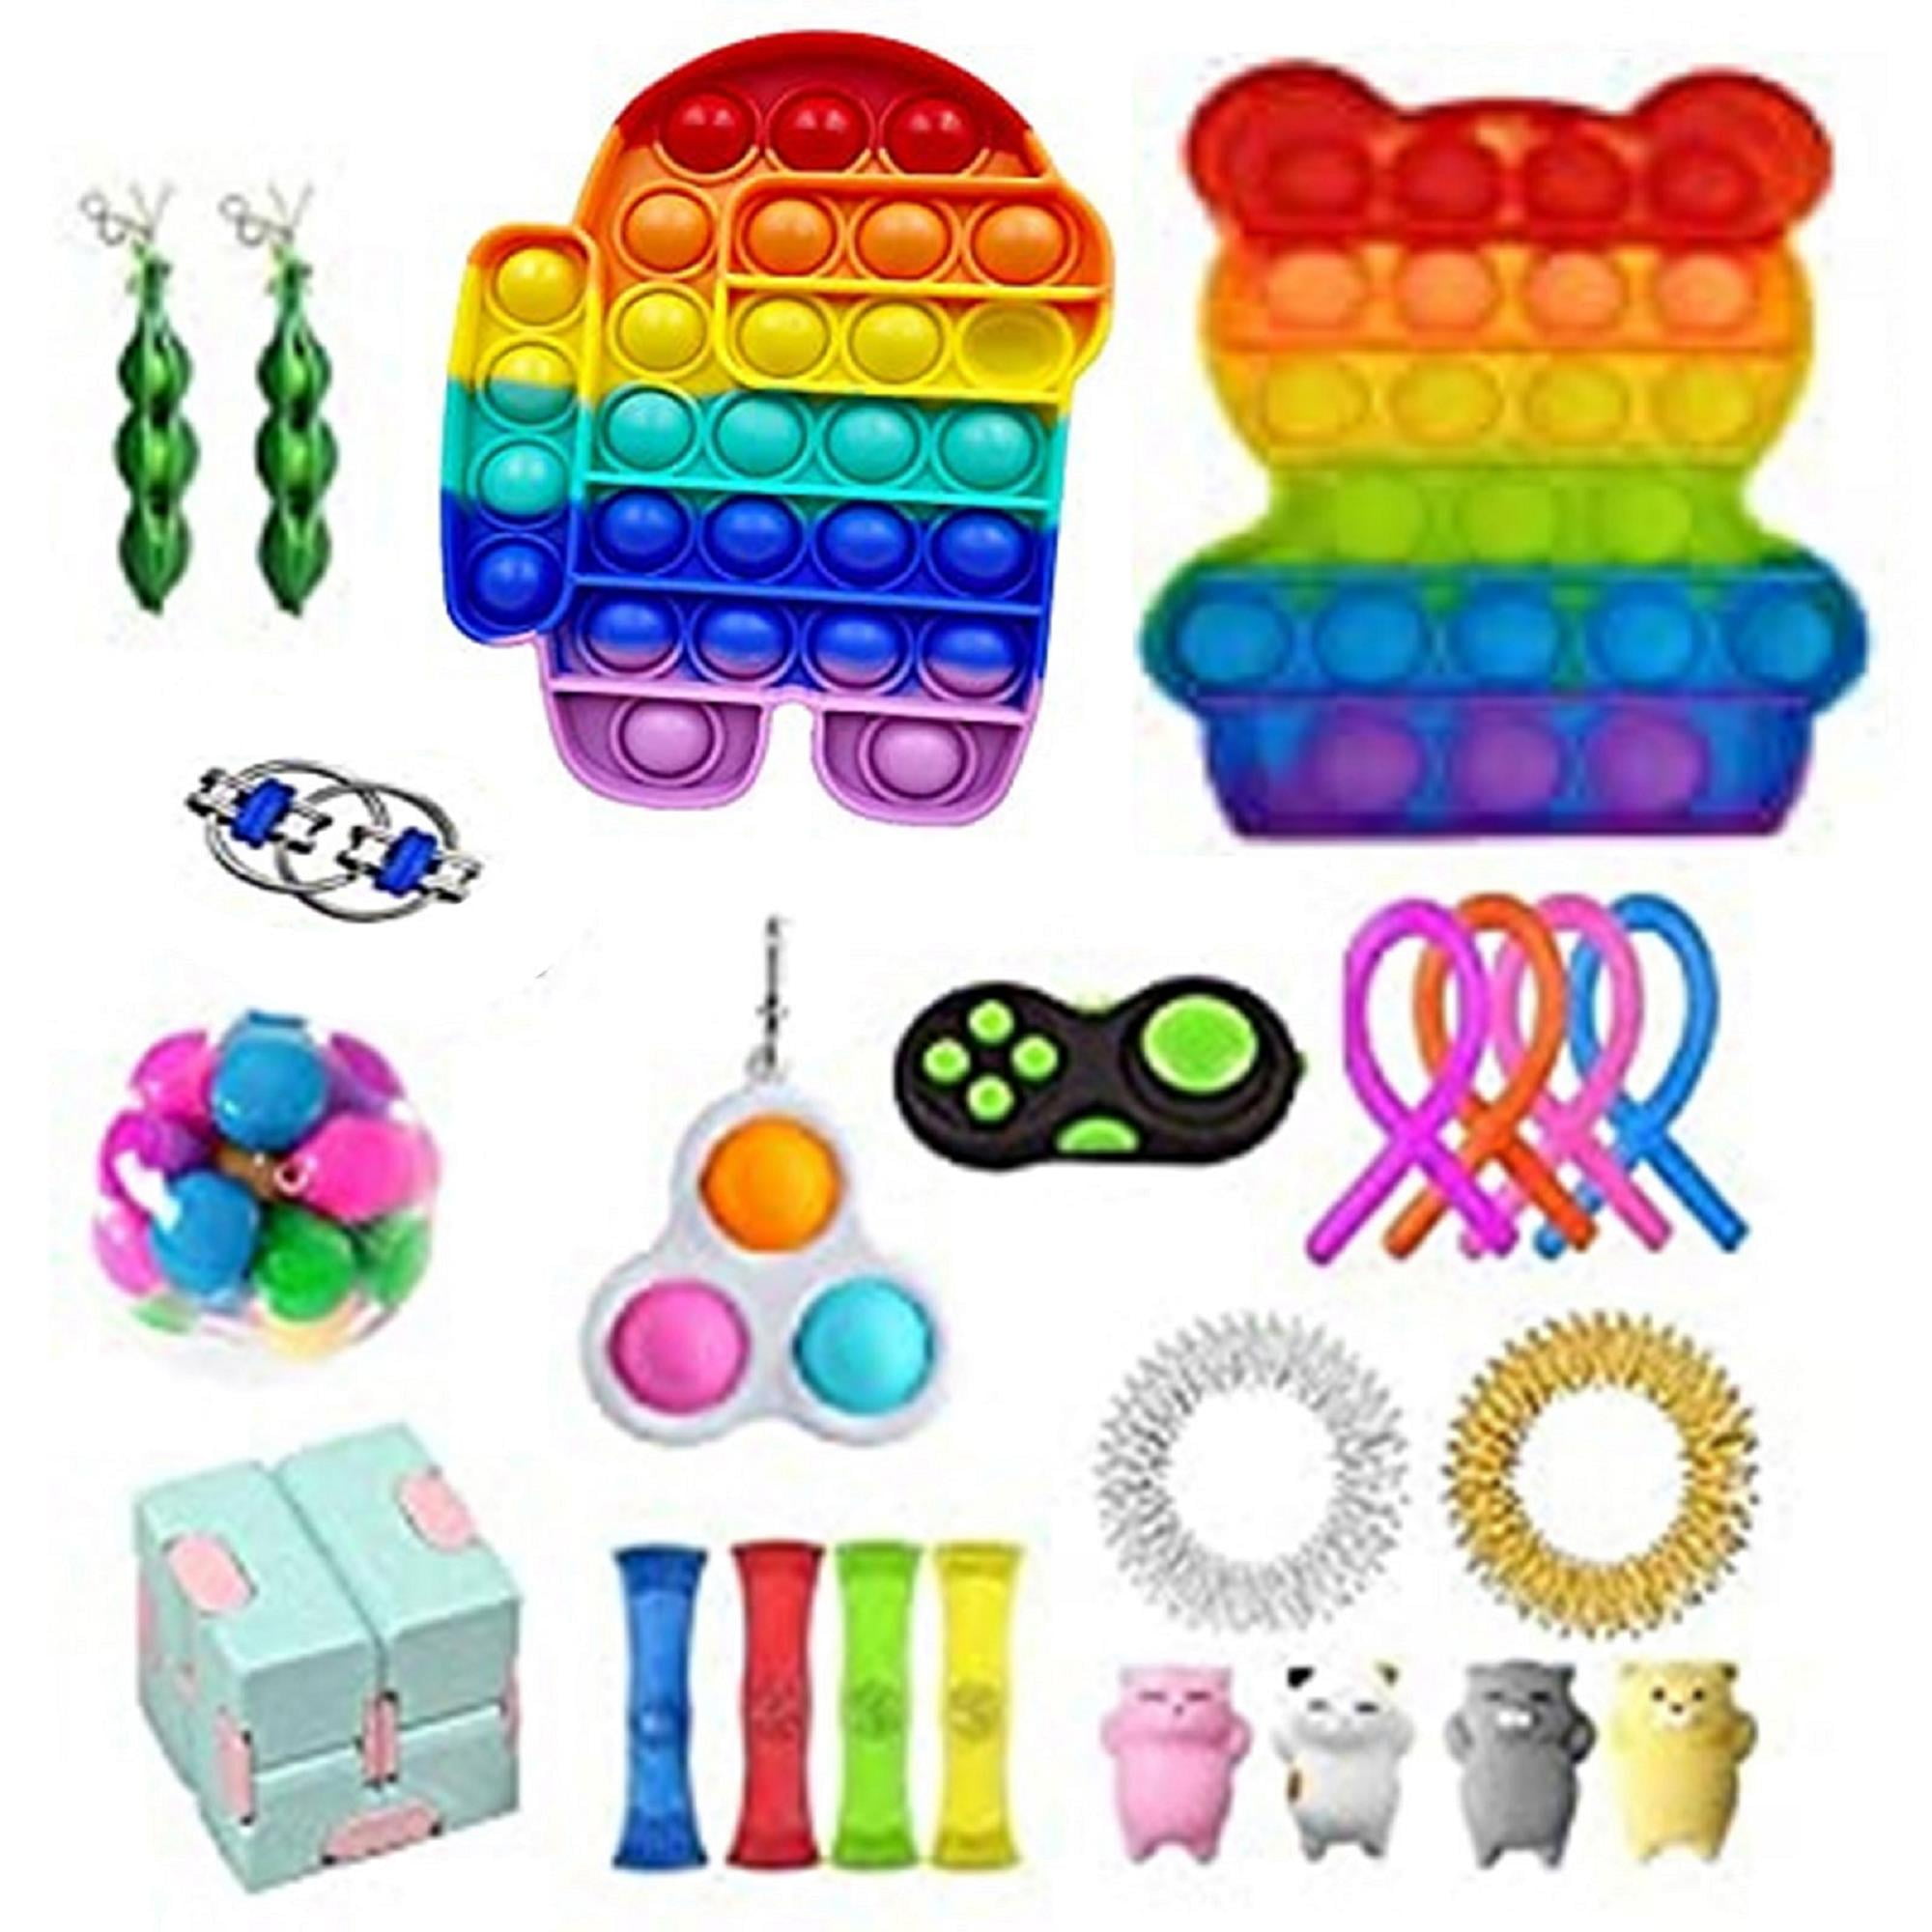 Details about   23Pack Fidget Toy Set Sensory Stress Relief Toys Push Pop Bubble Toy for Kids AU 